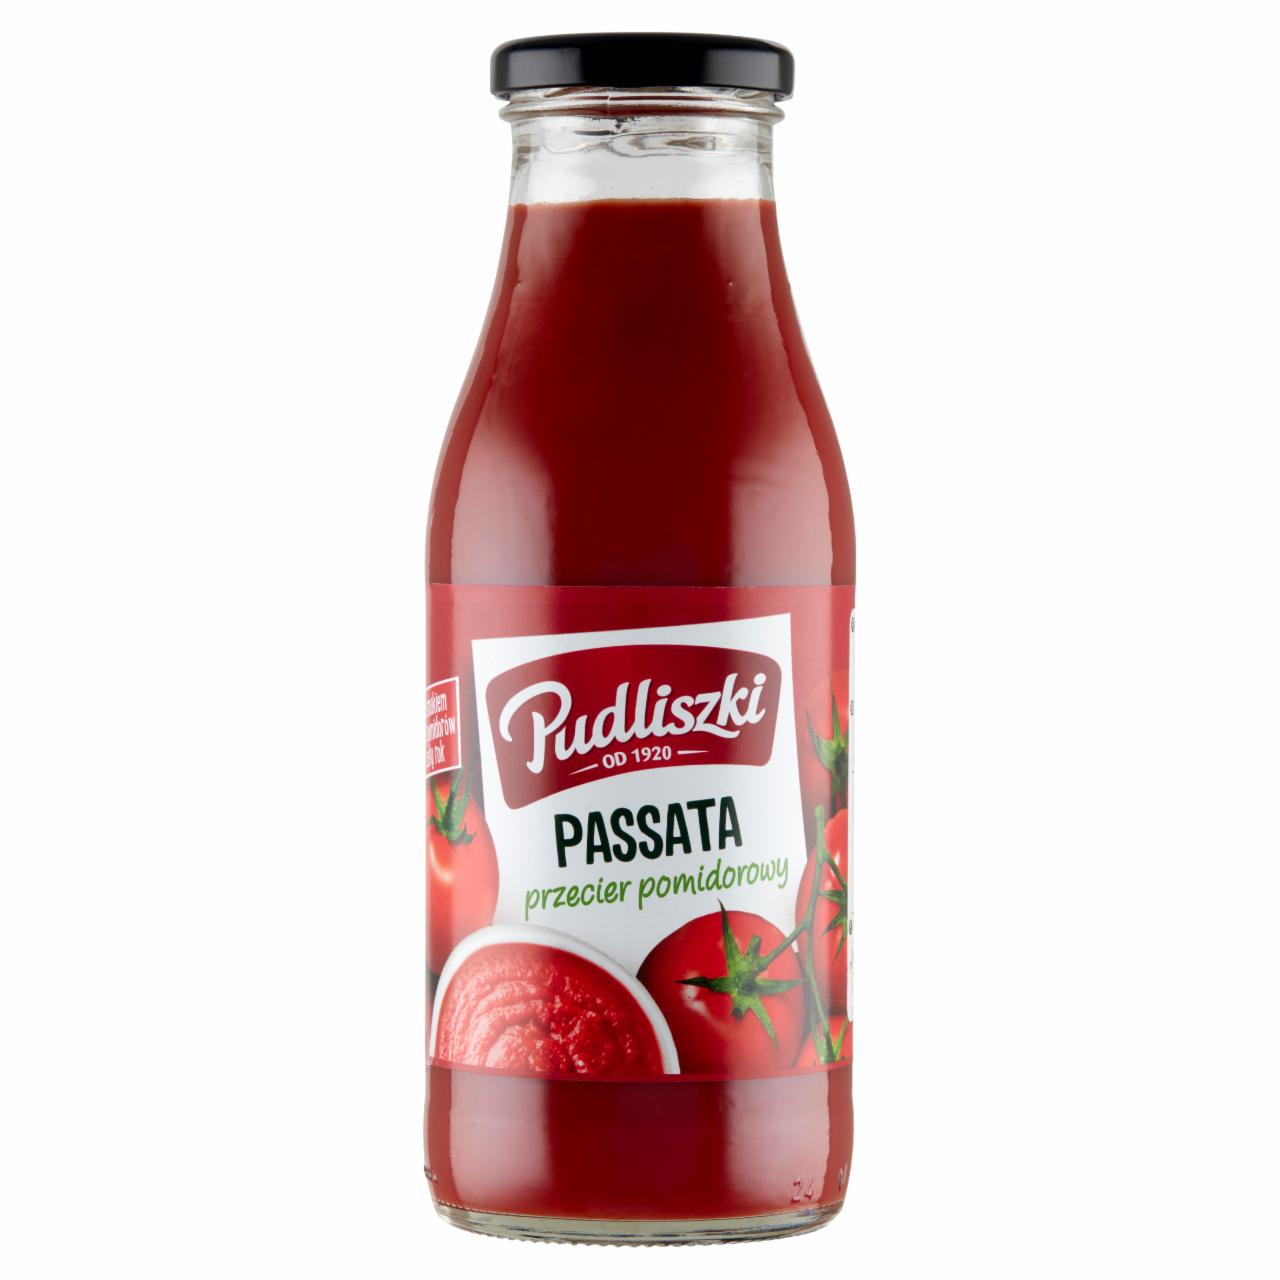 Zdjęcia - Pudliszki Passata przecier pomidorowy 500 g